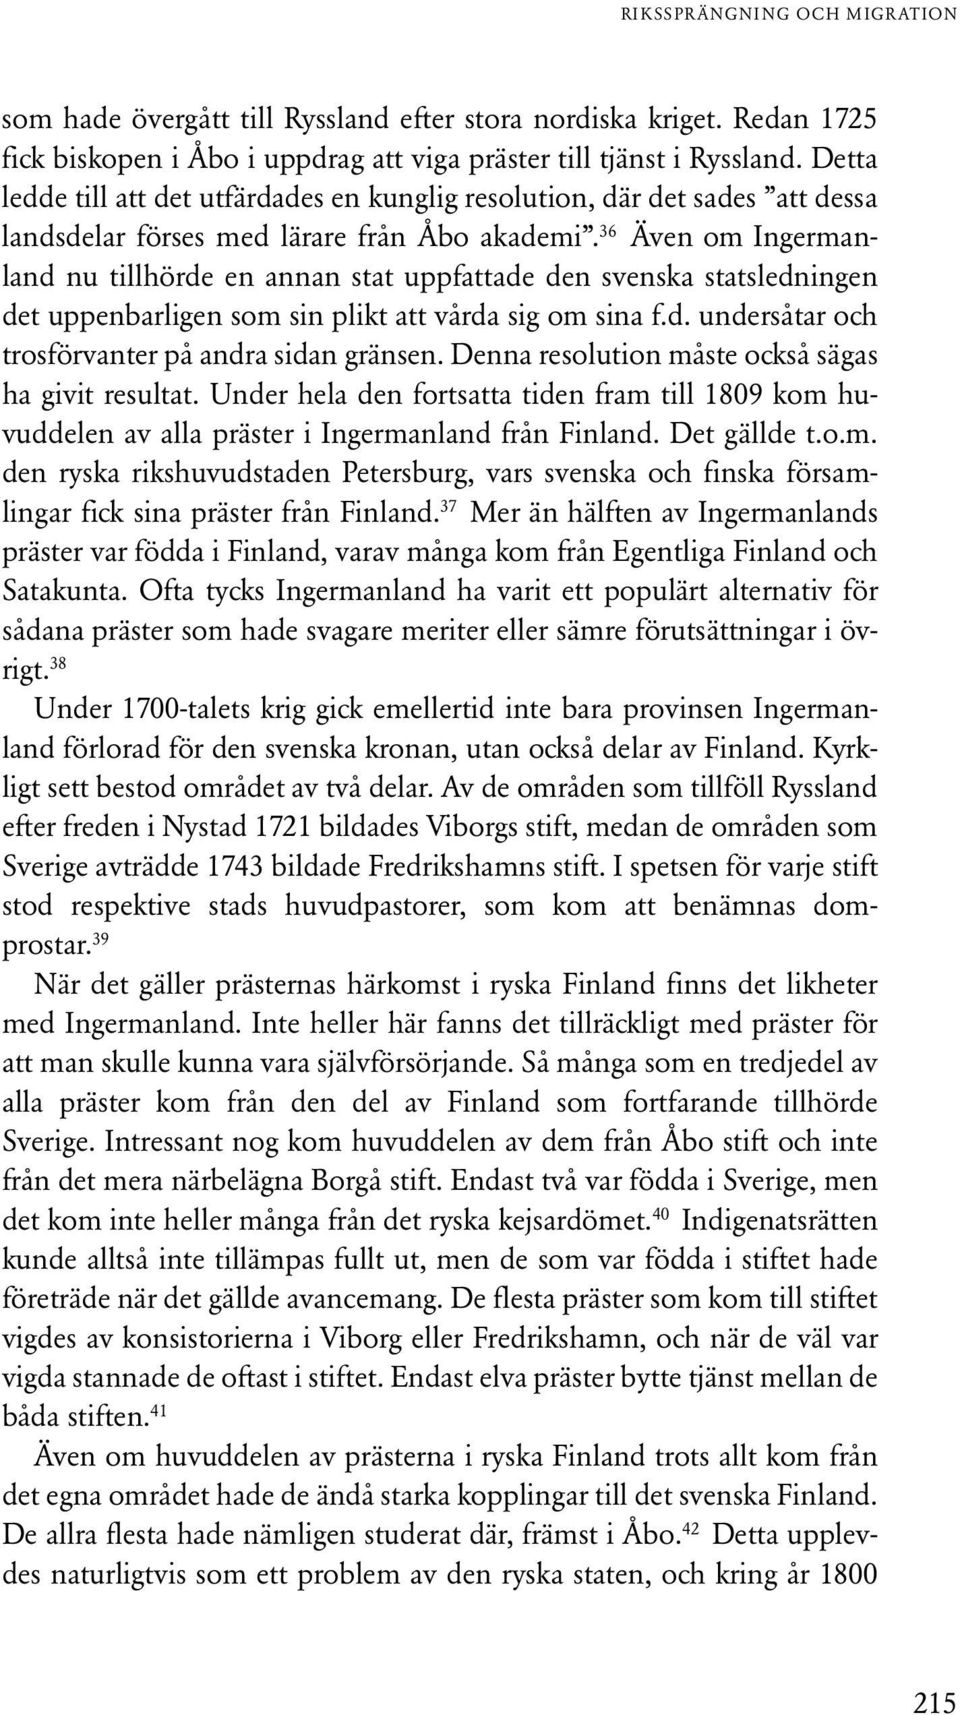 36 Även om Ingermanland nu tillhörde en annan stat uppfattade den svenska statsledningen det uppenbarligen som sin plikt att vårda sig om sina f.d. undersåtar och trosförvanter på andra sidan gränsen.